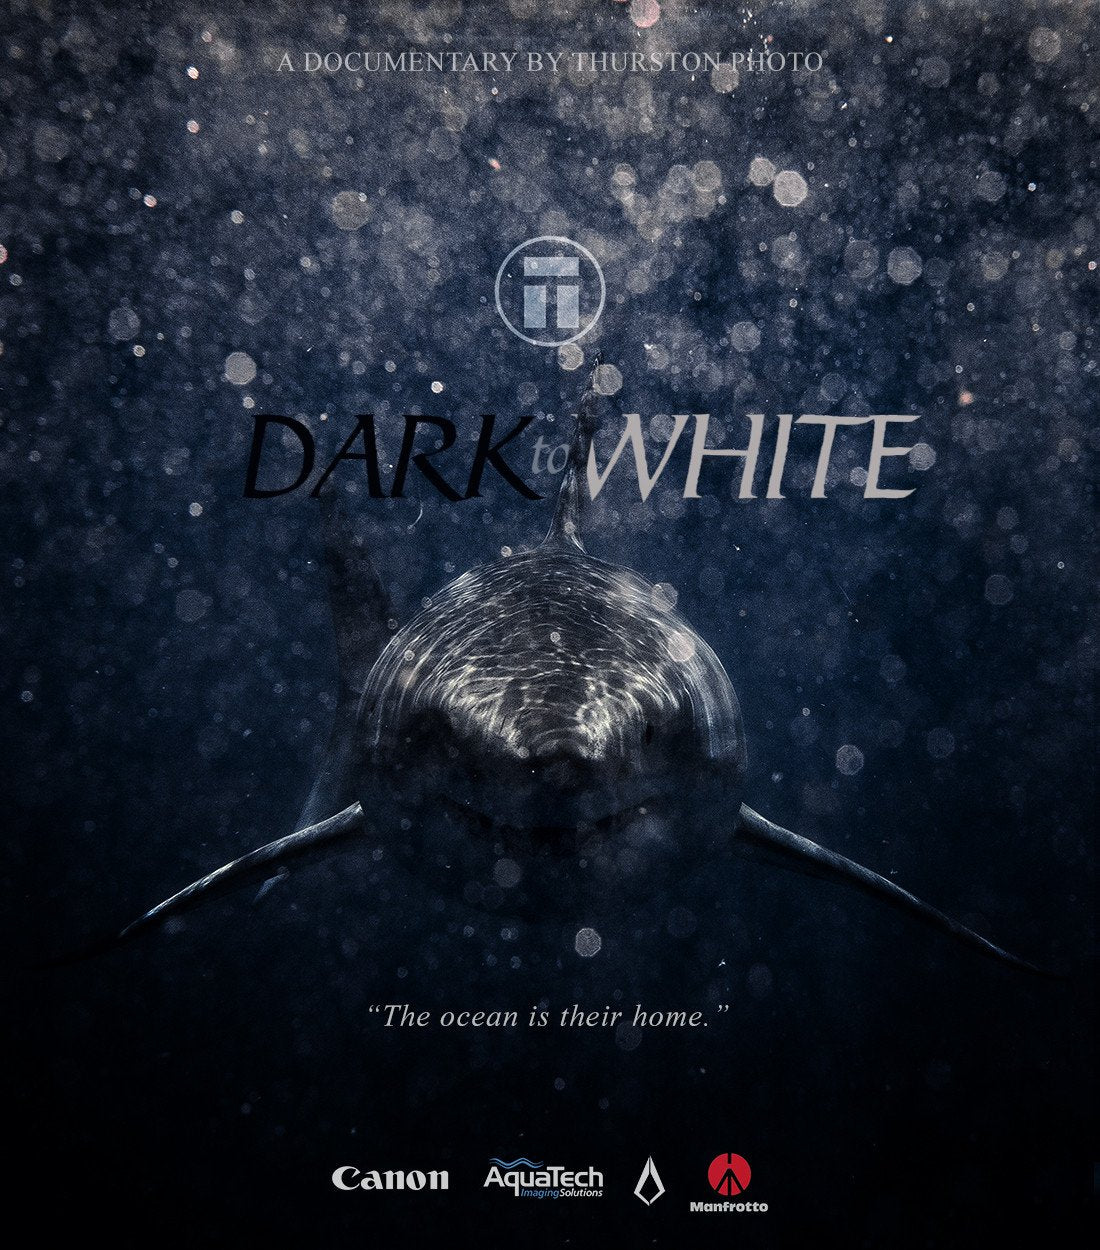 Dark to White shark video